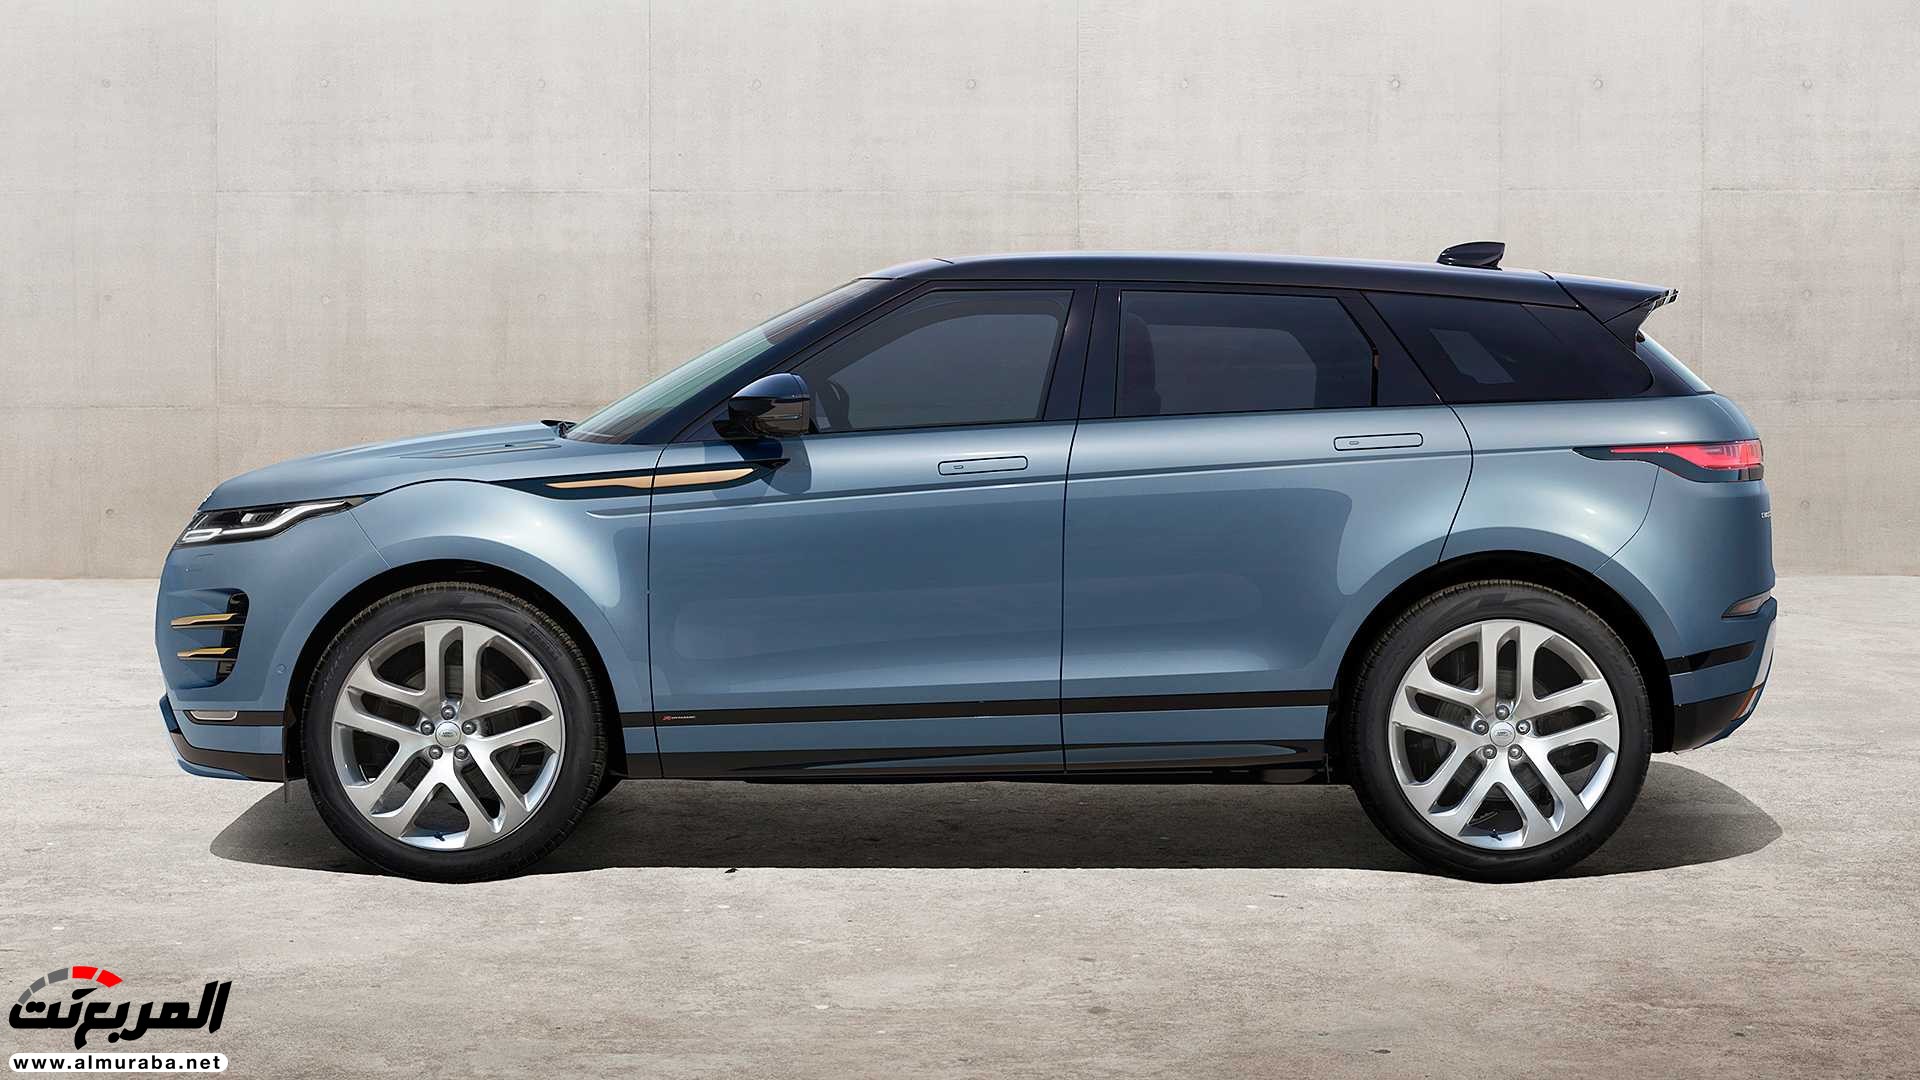 اهم 7 معلومات عن رنج روفر ايفوك 2020 الجديدة كلياً Range Rover Evoque 390